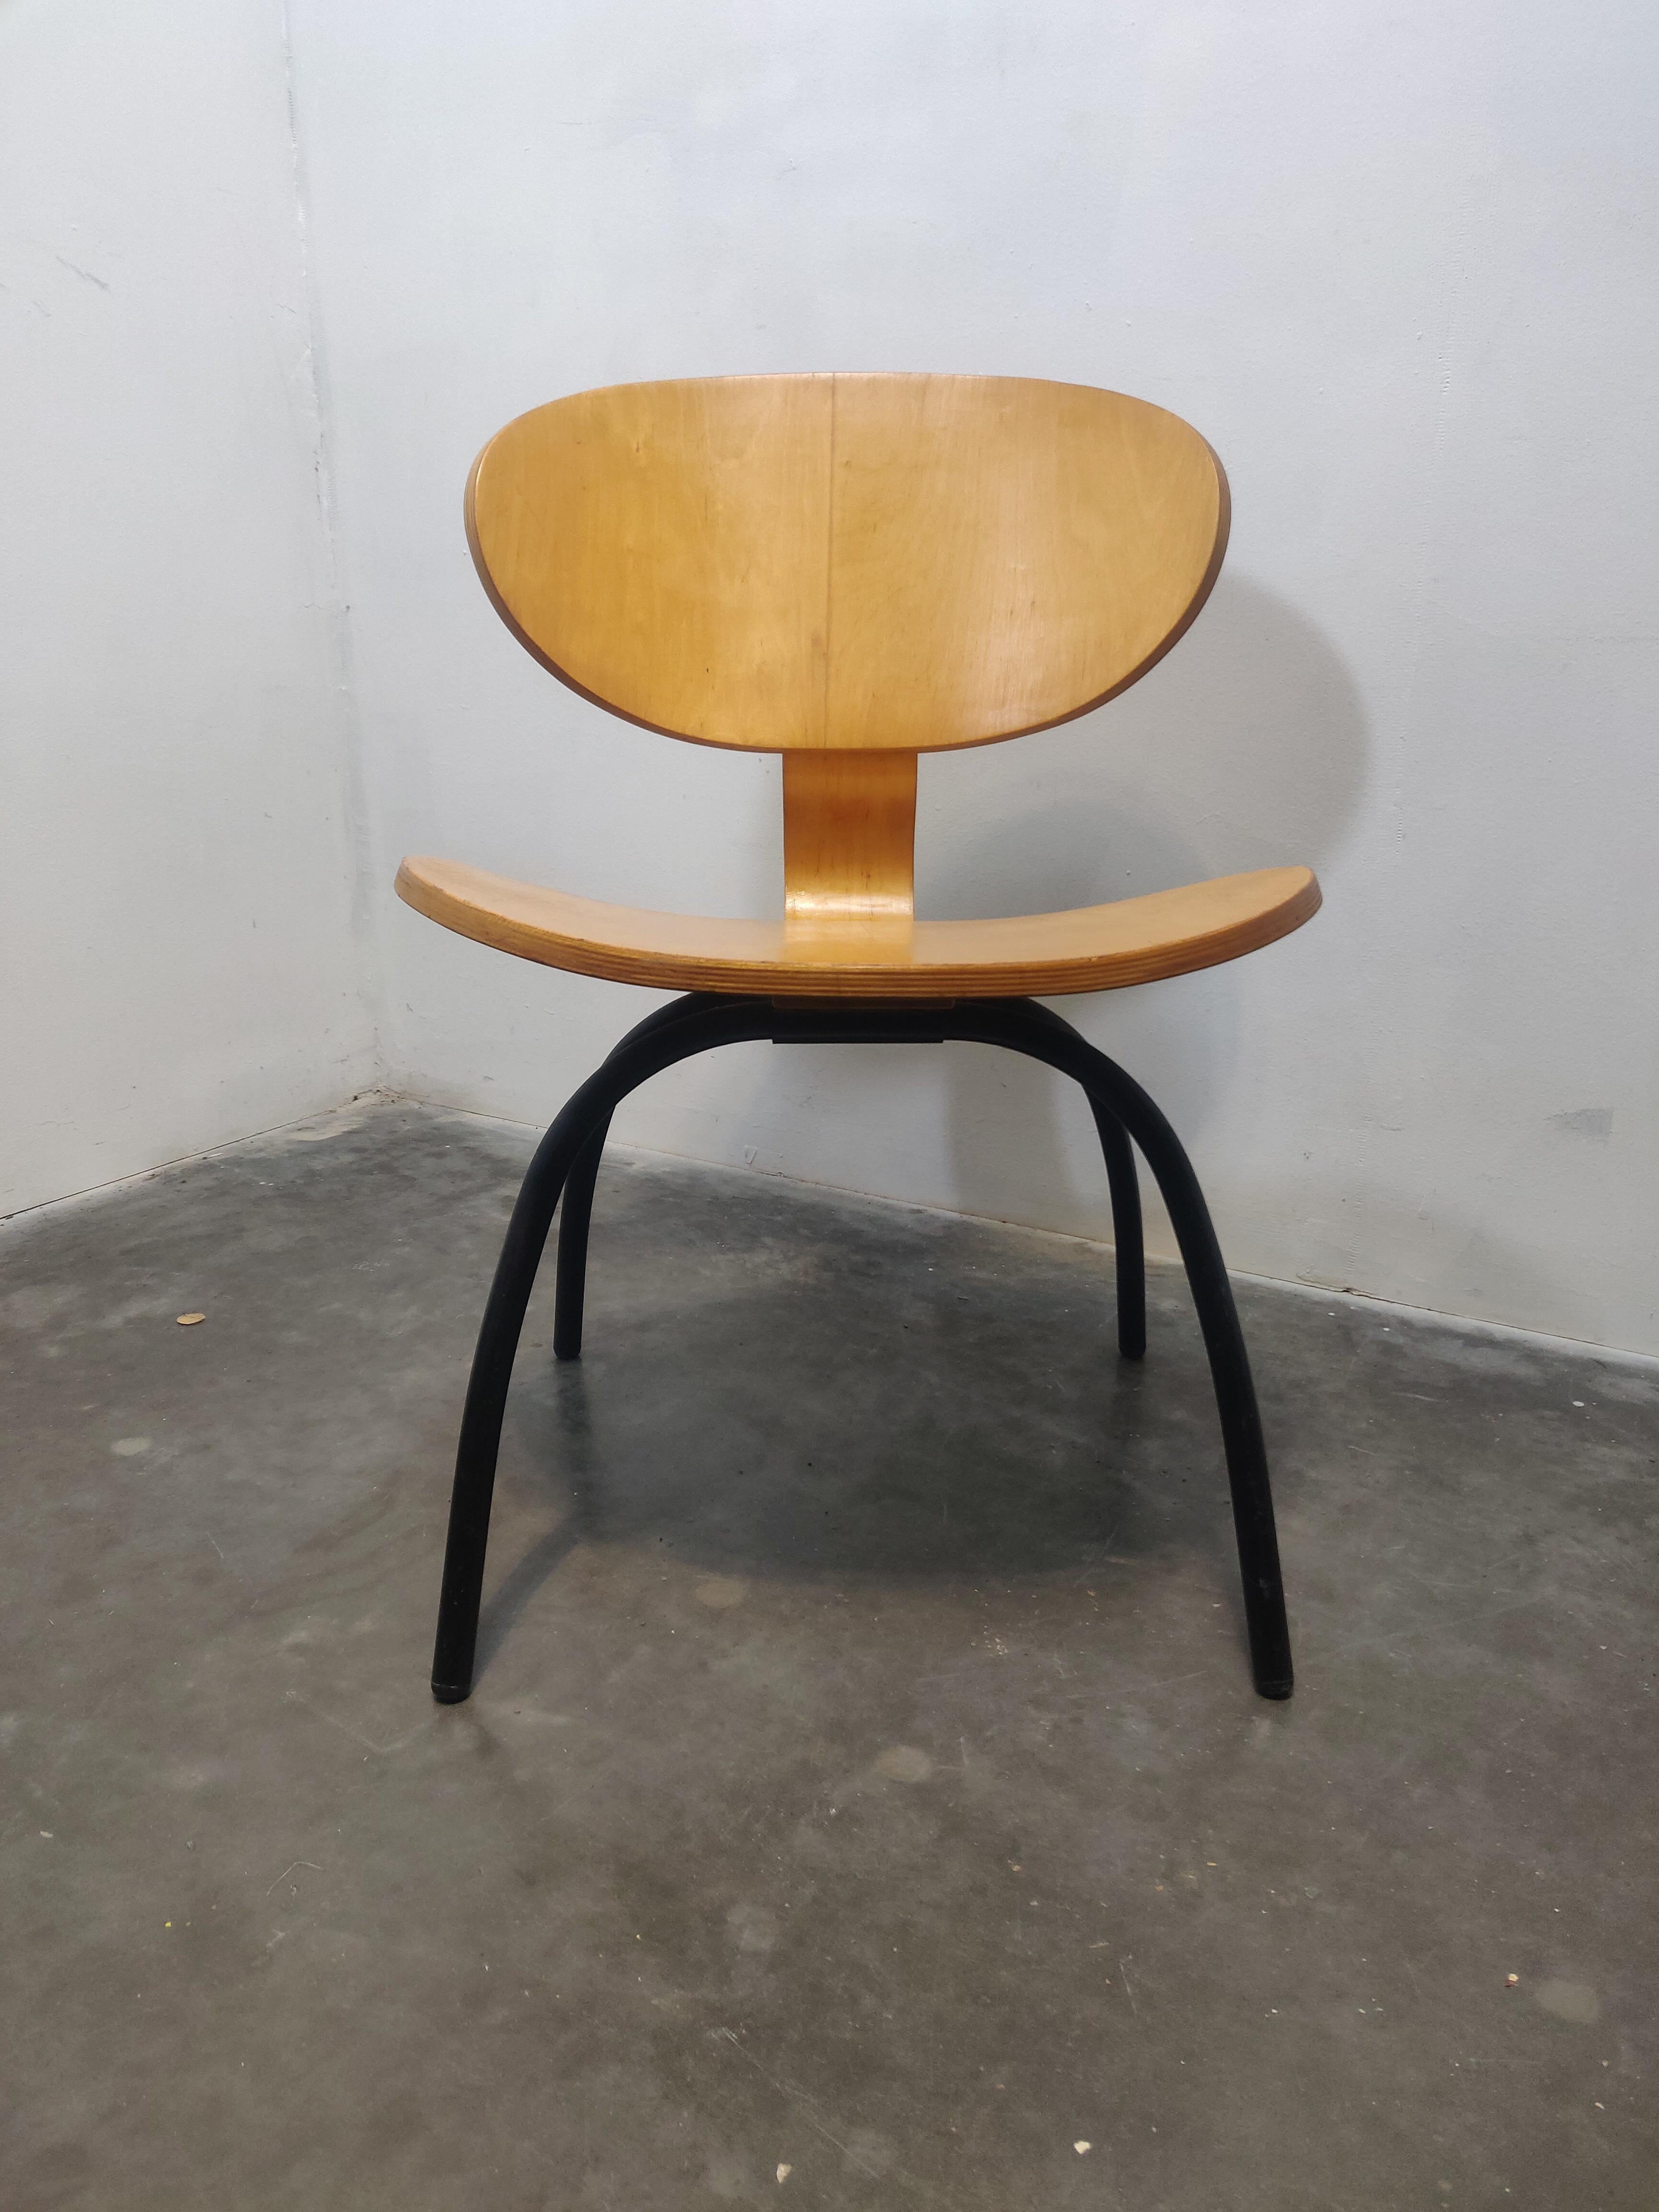 Rää, Sperrholzstuhl aus den frühen 1990er Jahren. Das Design ist inspiriert von dem LCW-Stuhl von Charles & Ray Eames. 